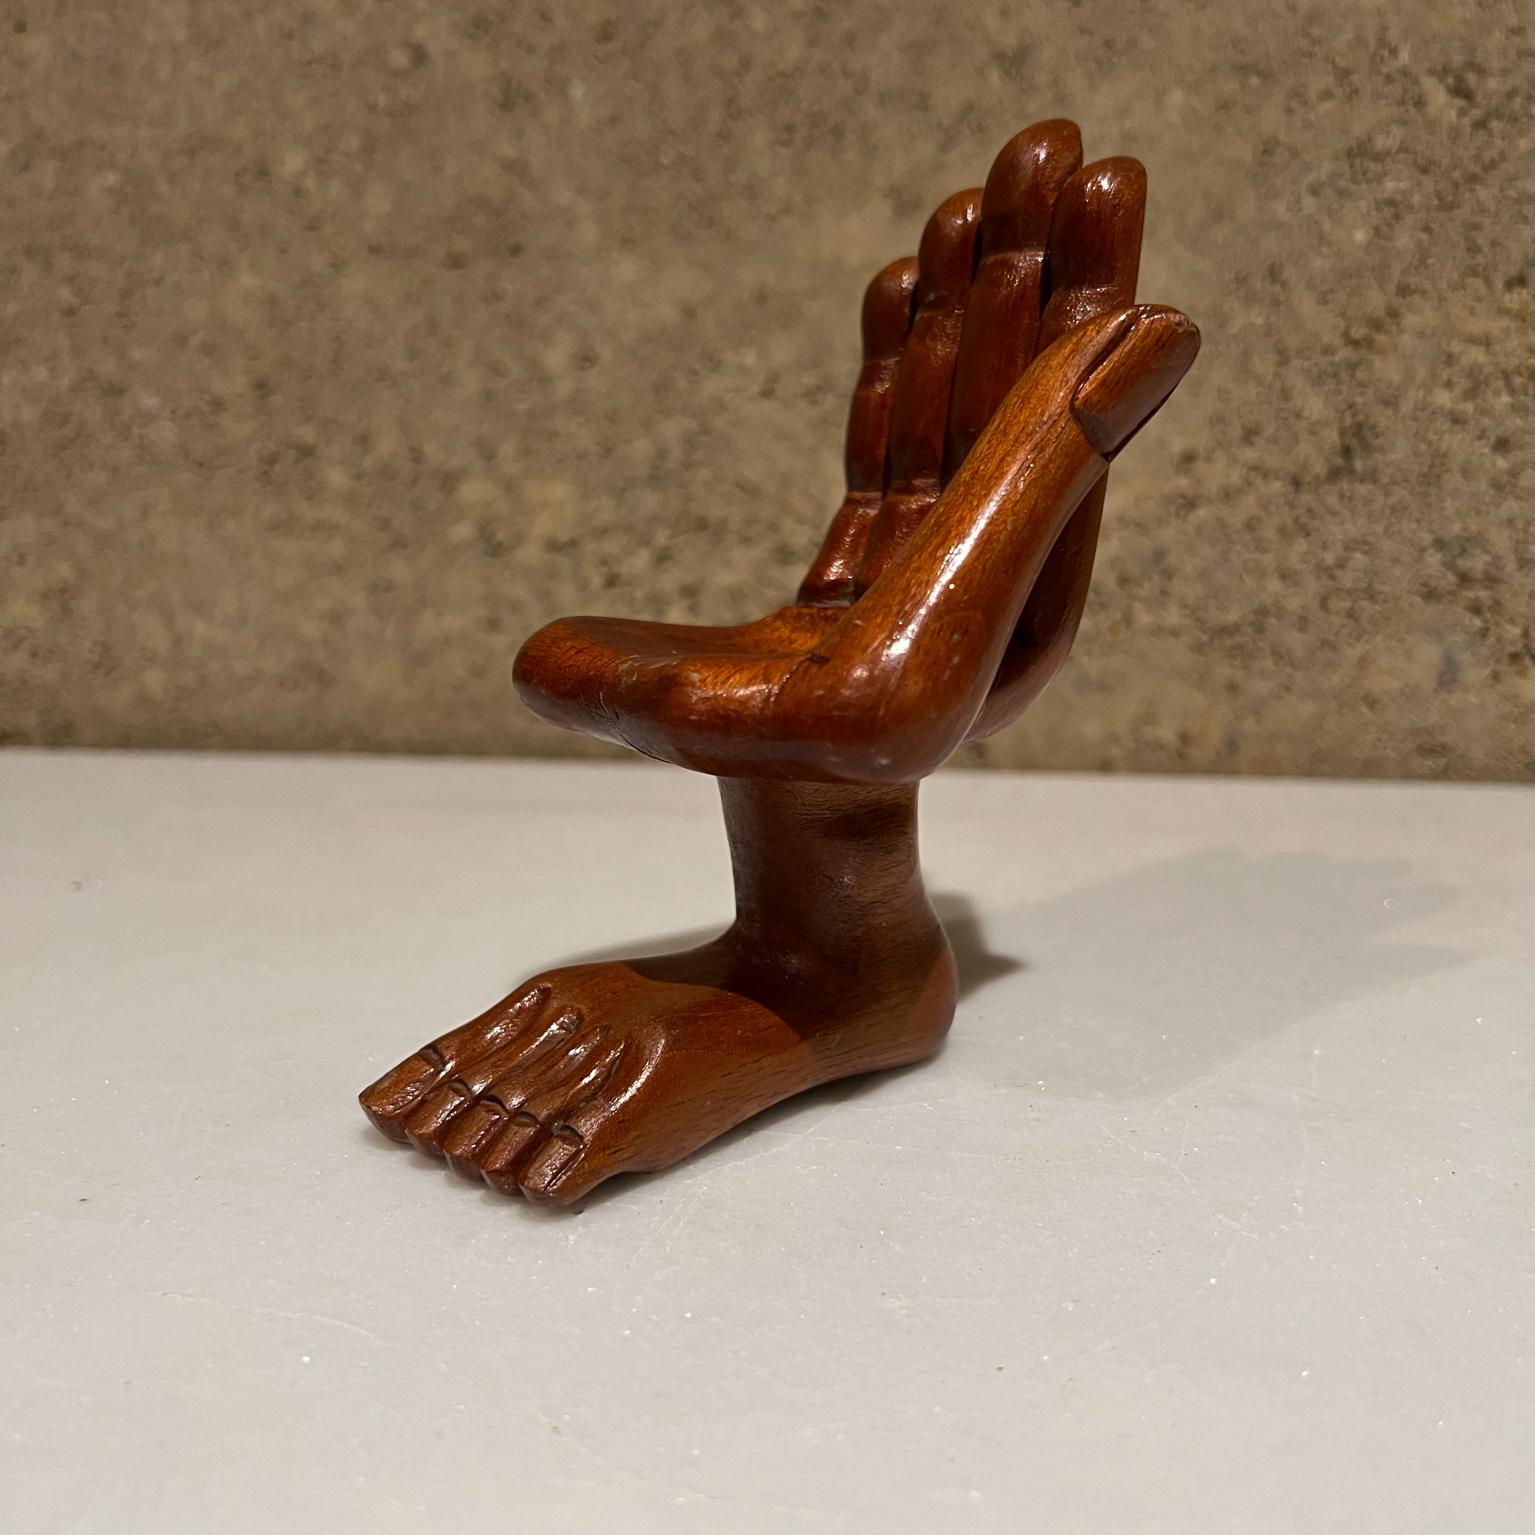 Sculpture de chaise miniature main-pied Pedro Friedeberg des années 1960.
Etat d'origine vintage non restauré. Signes d'usure présents.
Mesures : 4,38 de hauteur x 3,5 de profondeur x 2,5 de largeur.
Voir nos images fournies.